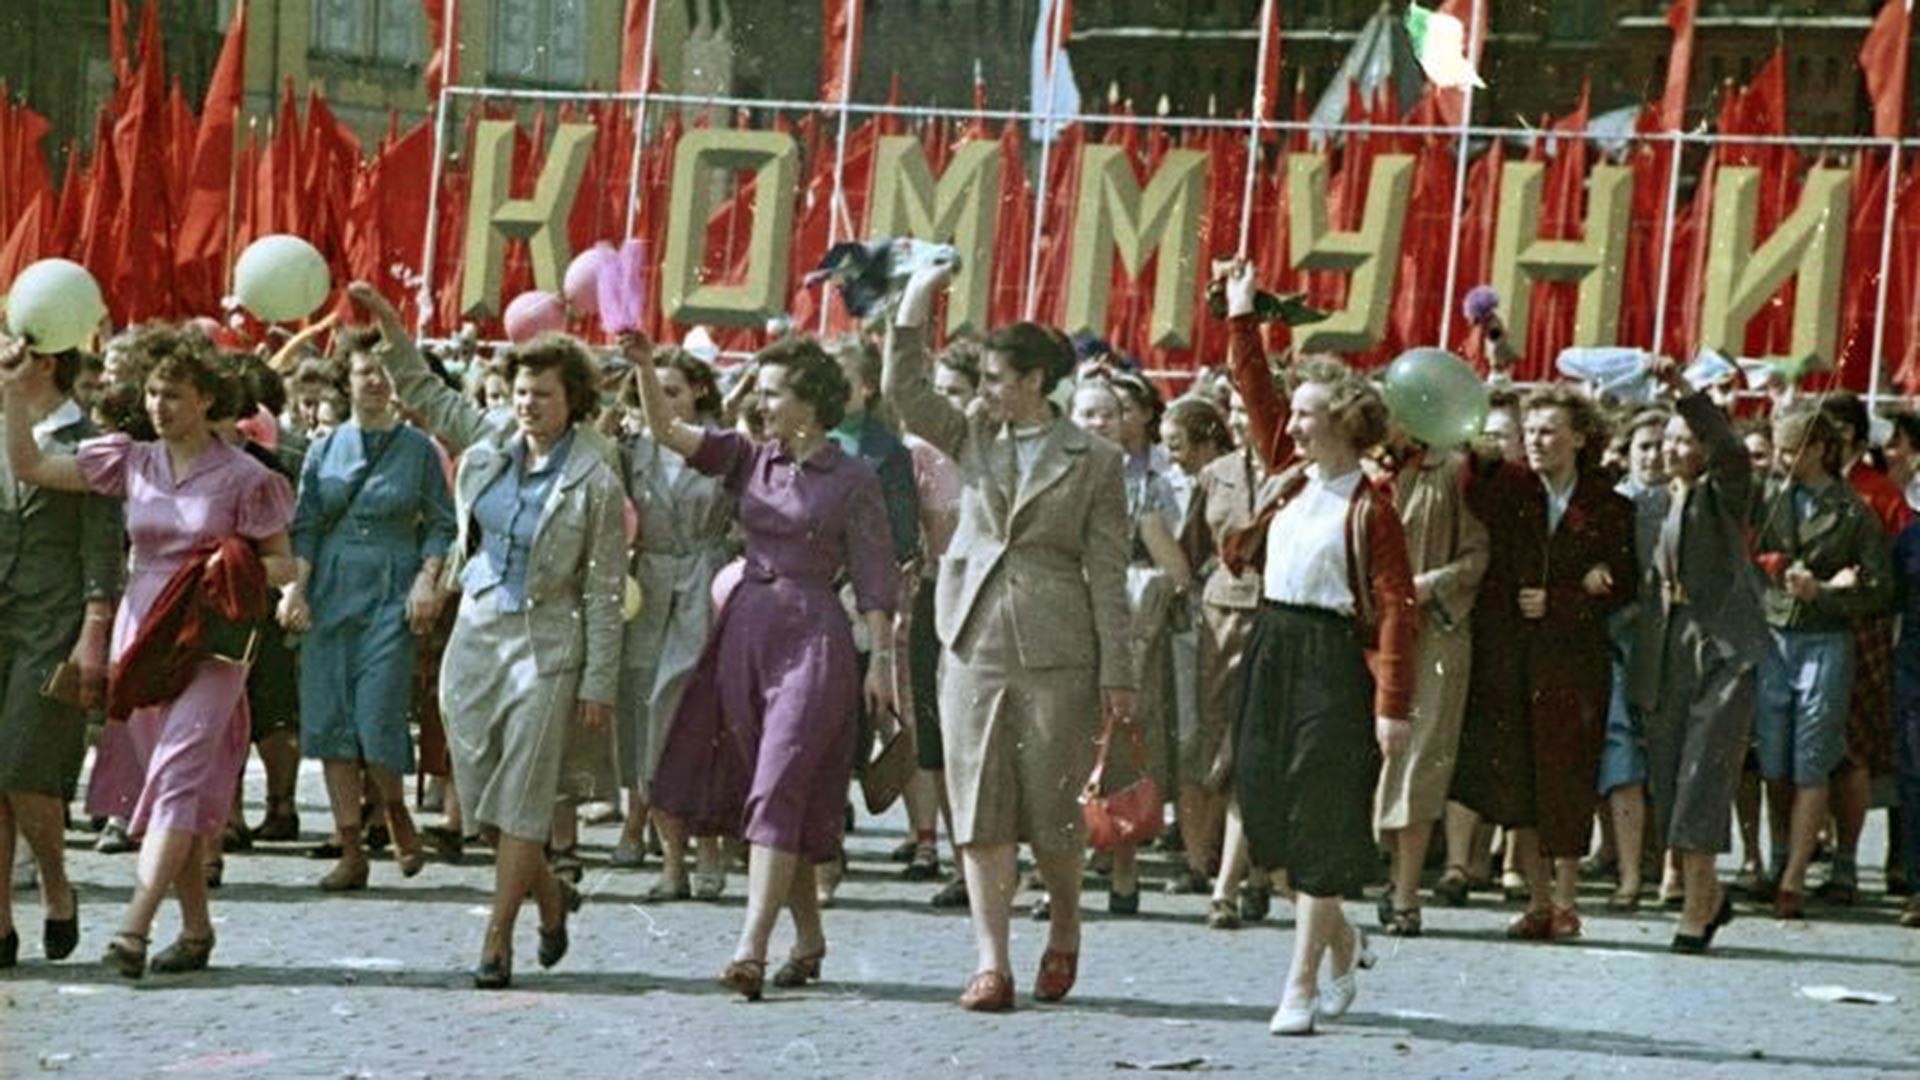 Mädchen in den Reihen der Demonstranten, 1950er Jahre.